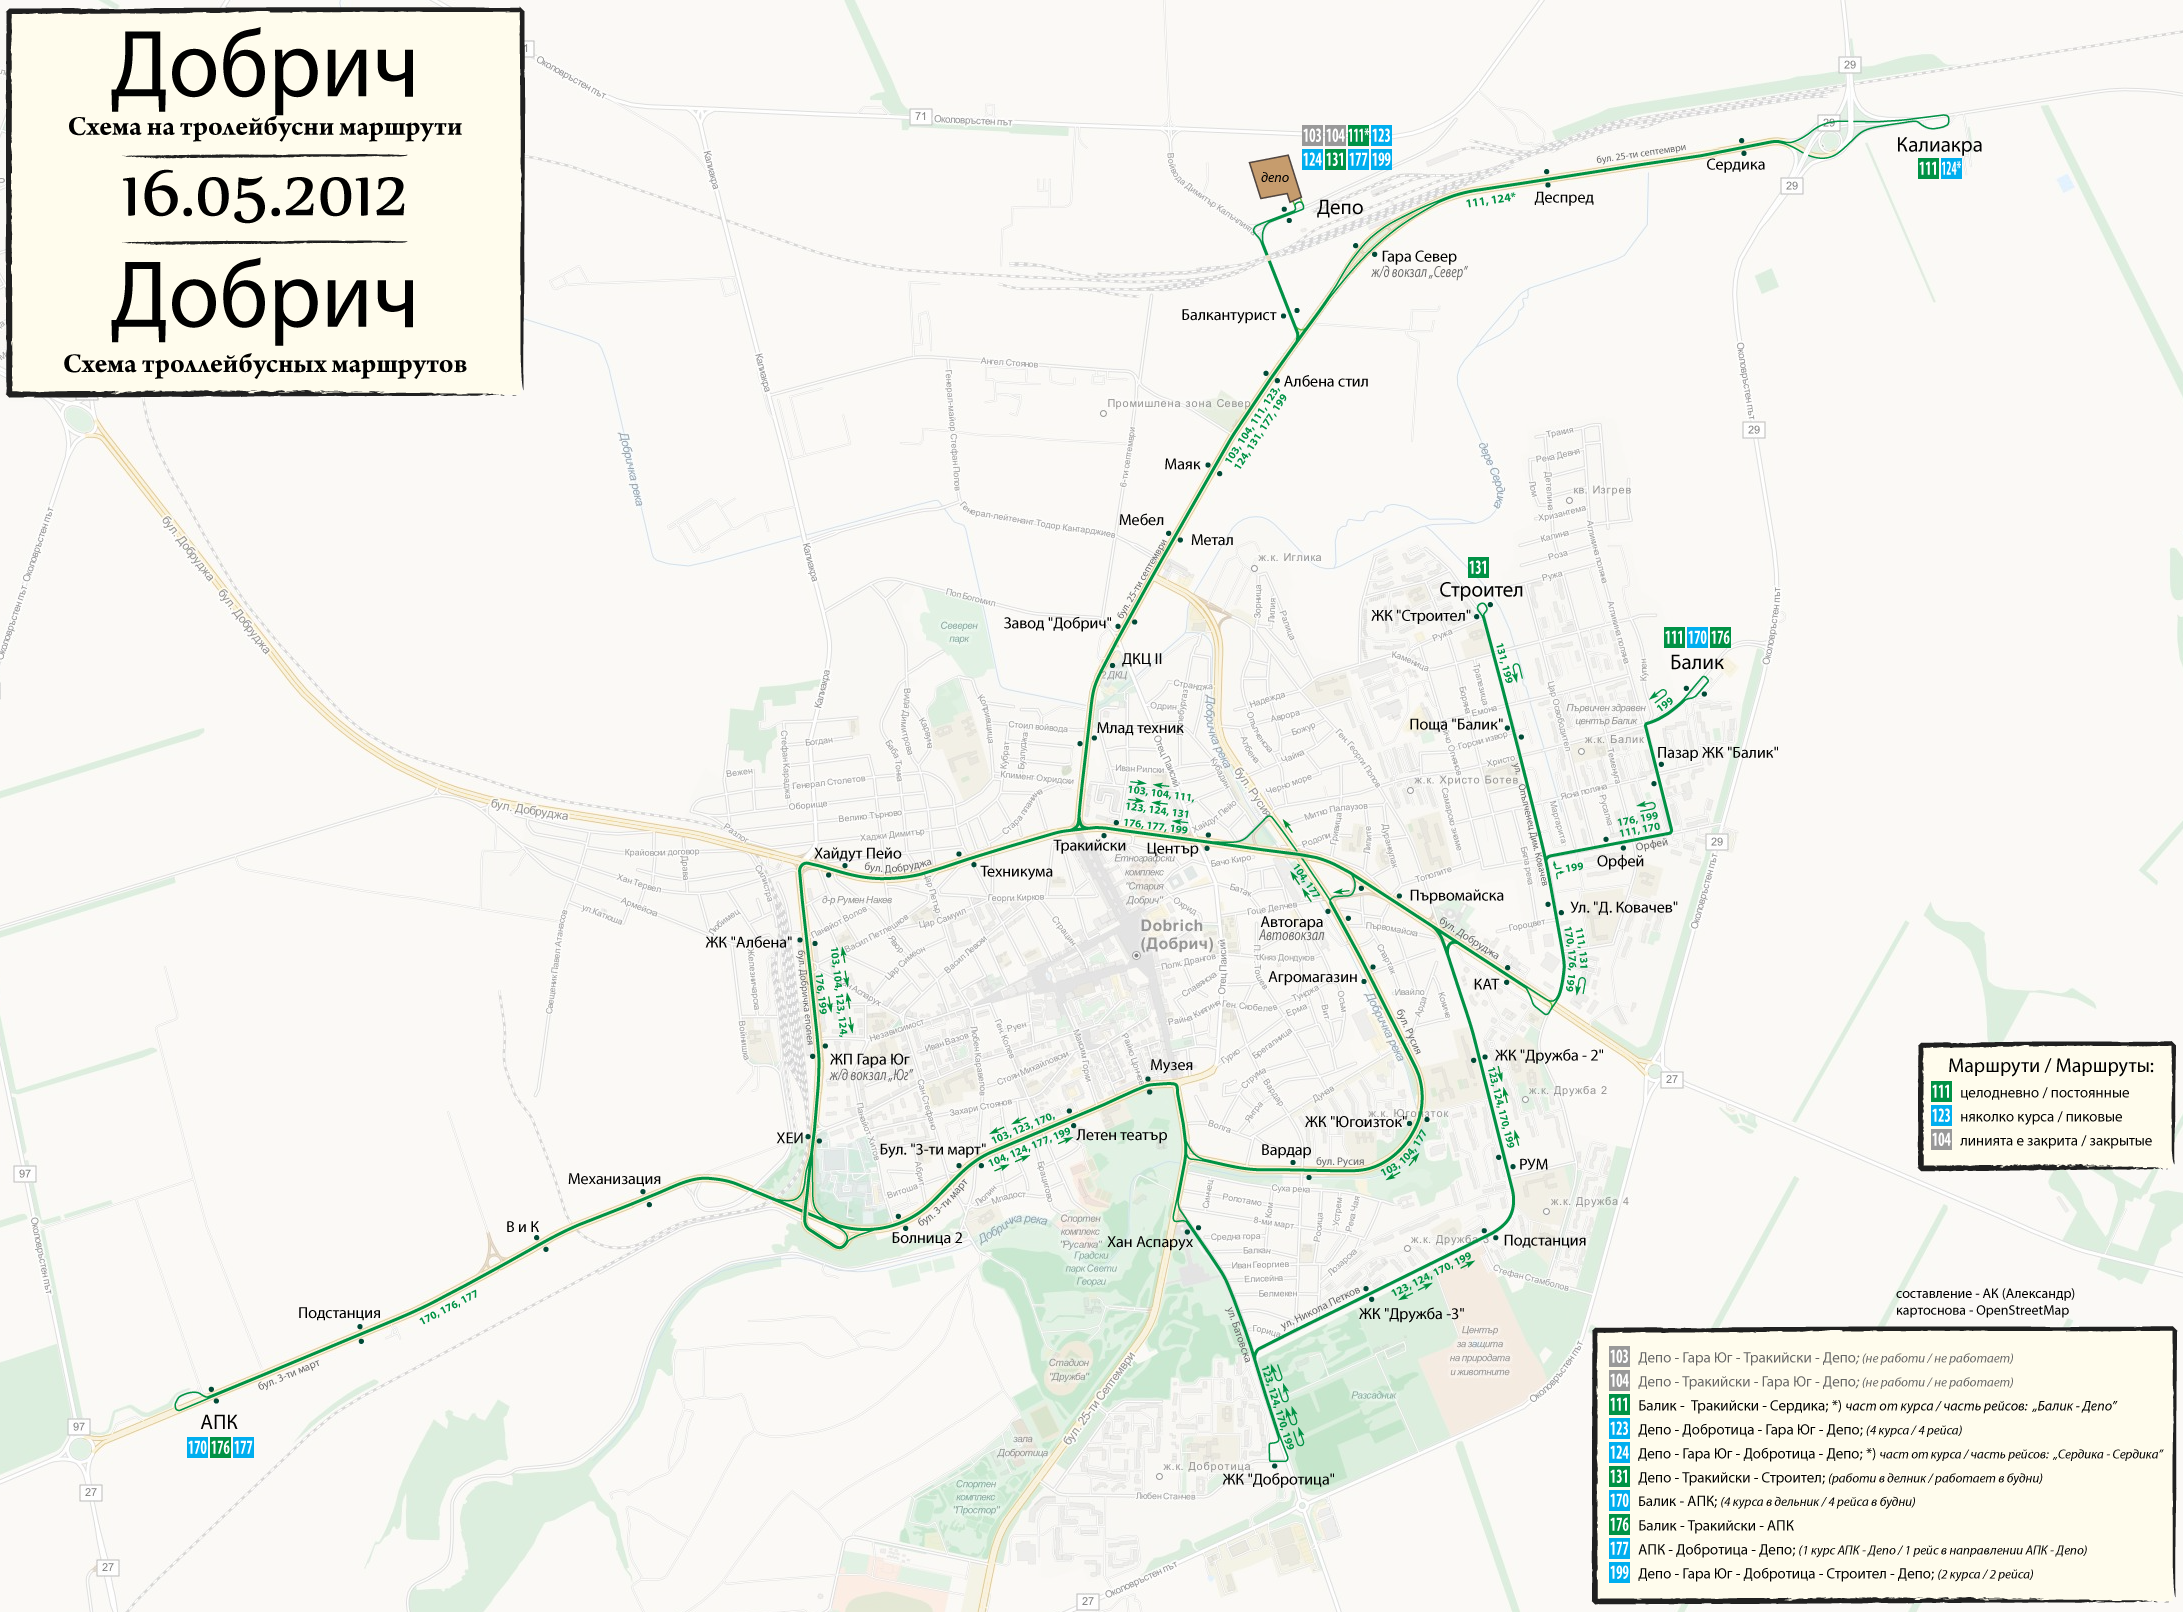 Dobrich — Maps